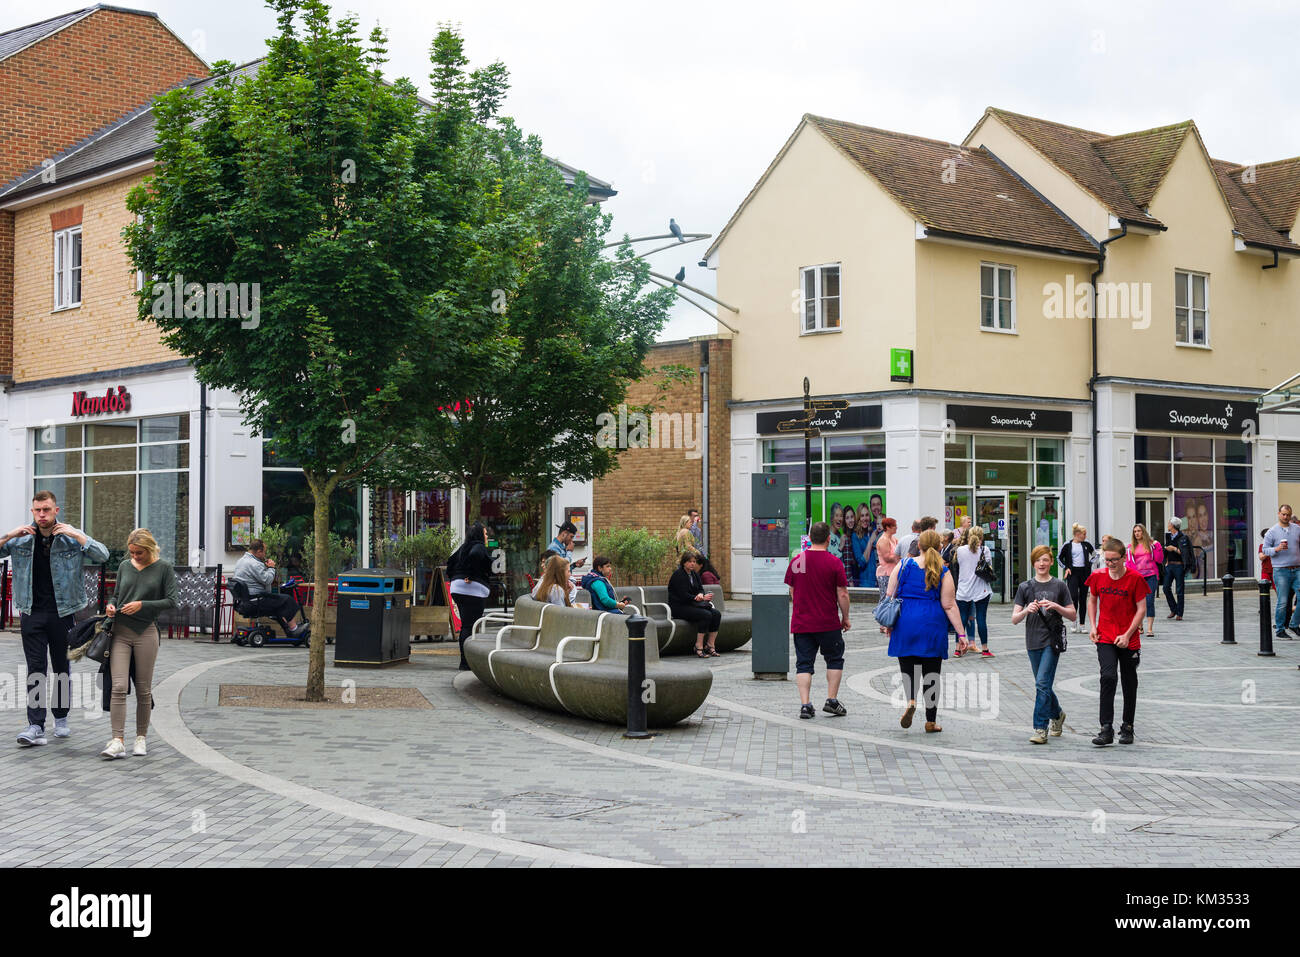 Los compradores caminando alrededor de la plaza Pioneer regeneración urbana, Ciudad de Bicester, England, Reino Unido Foto de stock